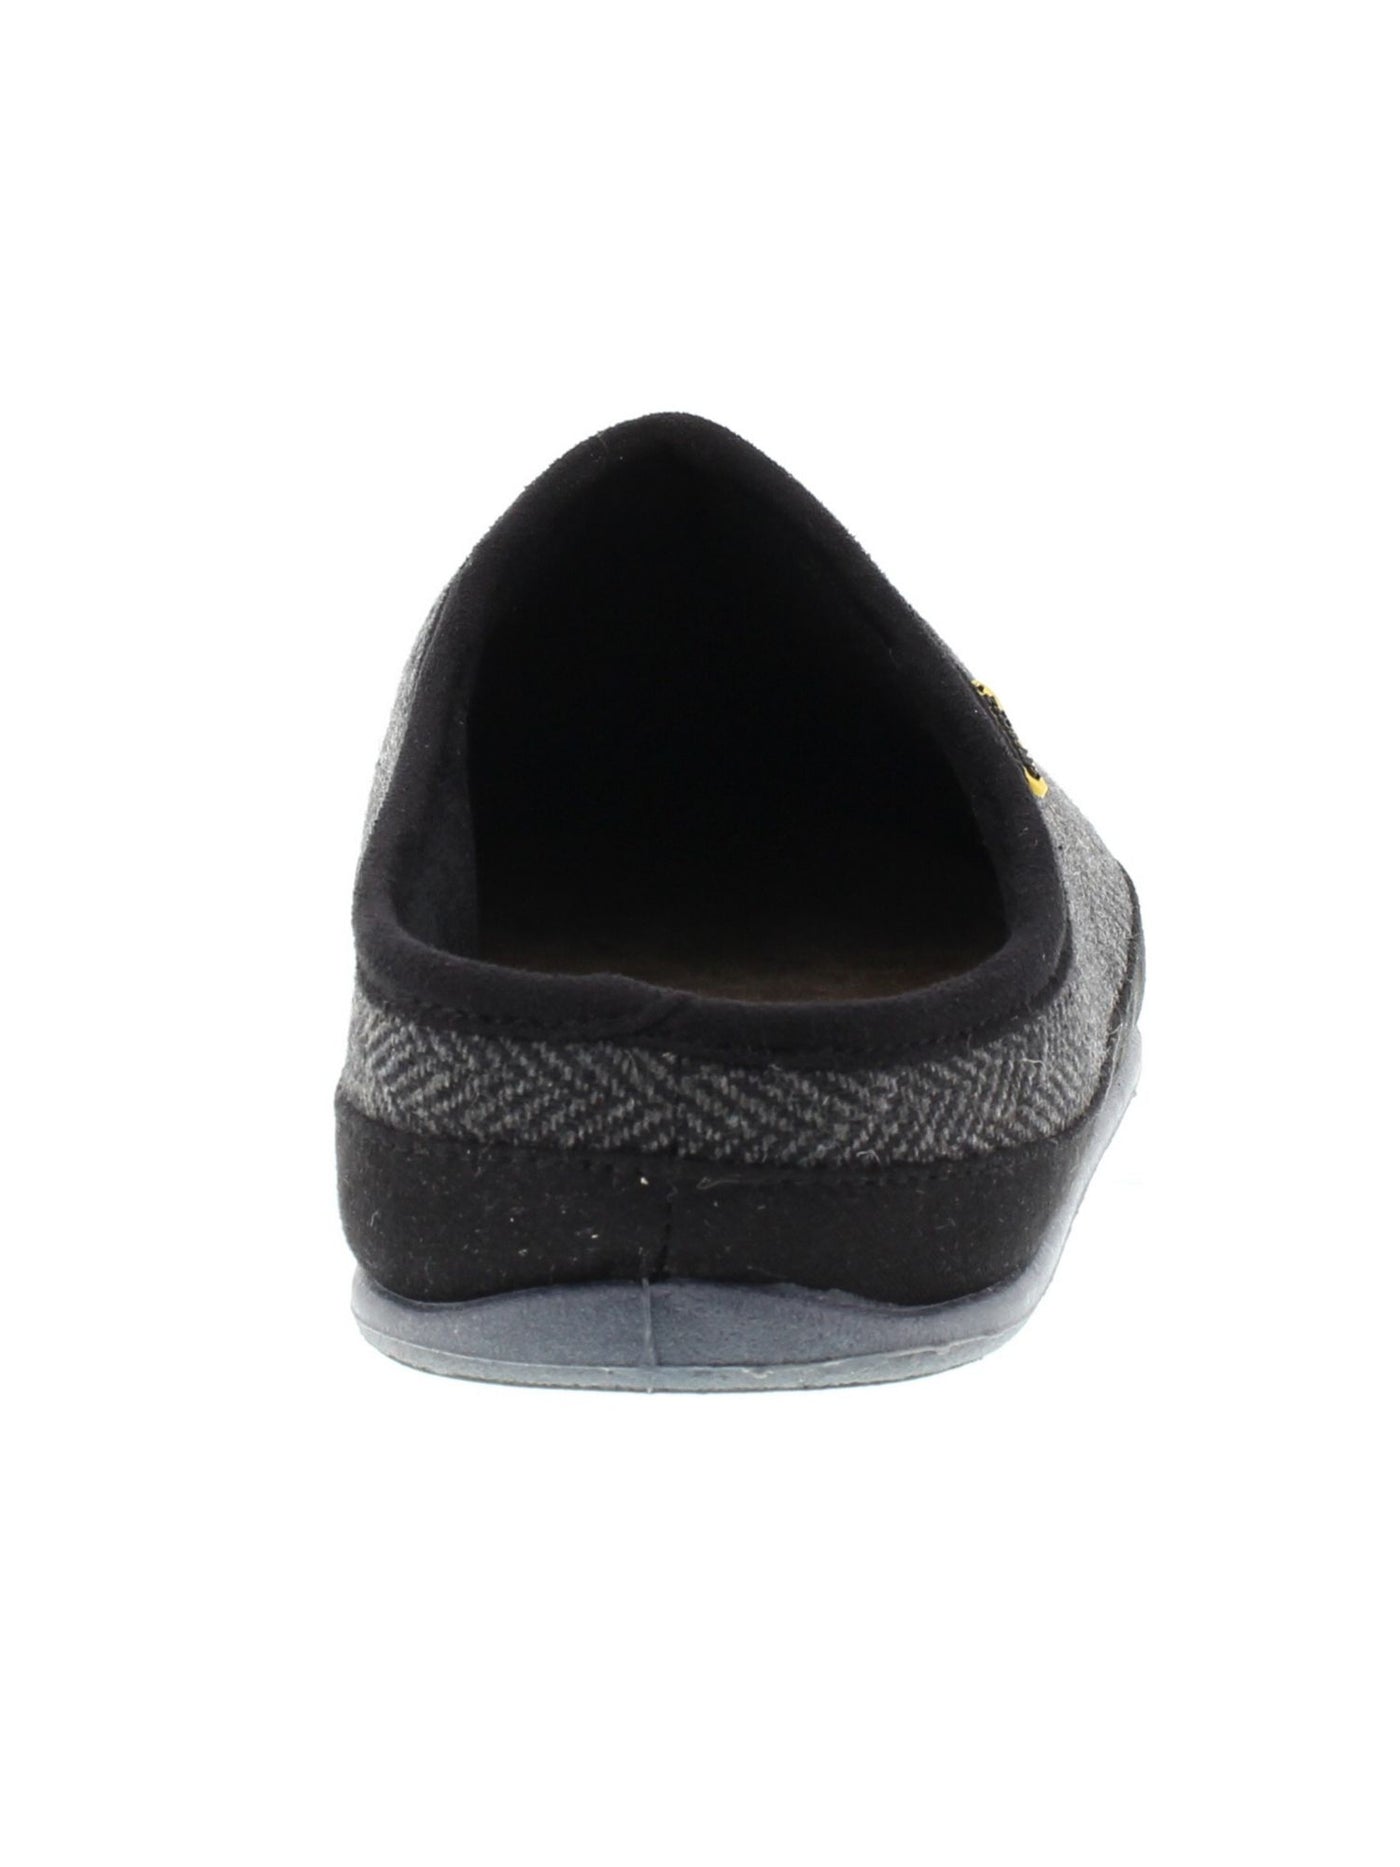 DEER STAGS SLIPPEROOZ Mens Black Herringbone Padded Comfort Wherever Round Toe Platform Slip On Slippers Shoes 11 W